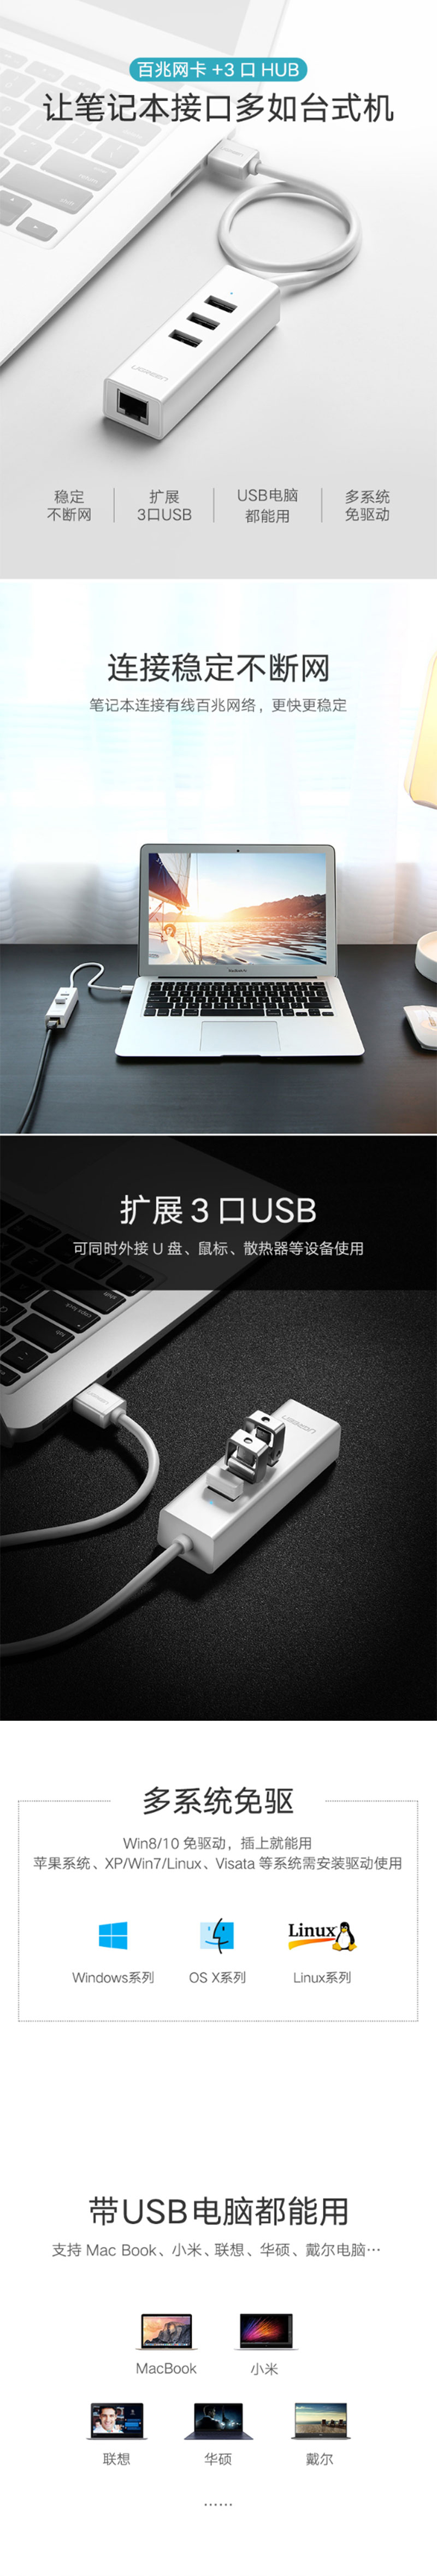 绿联30298 USB转网口+HUB